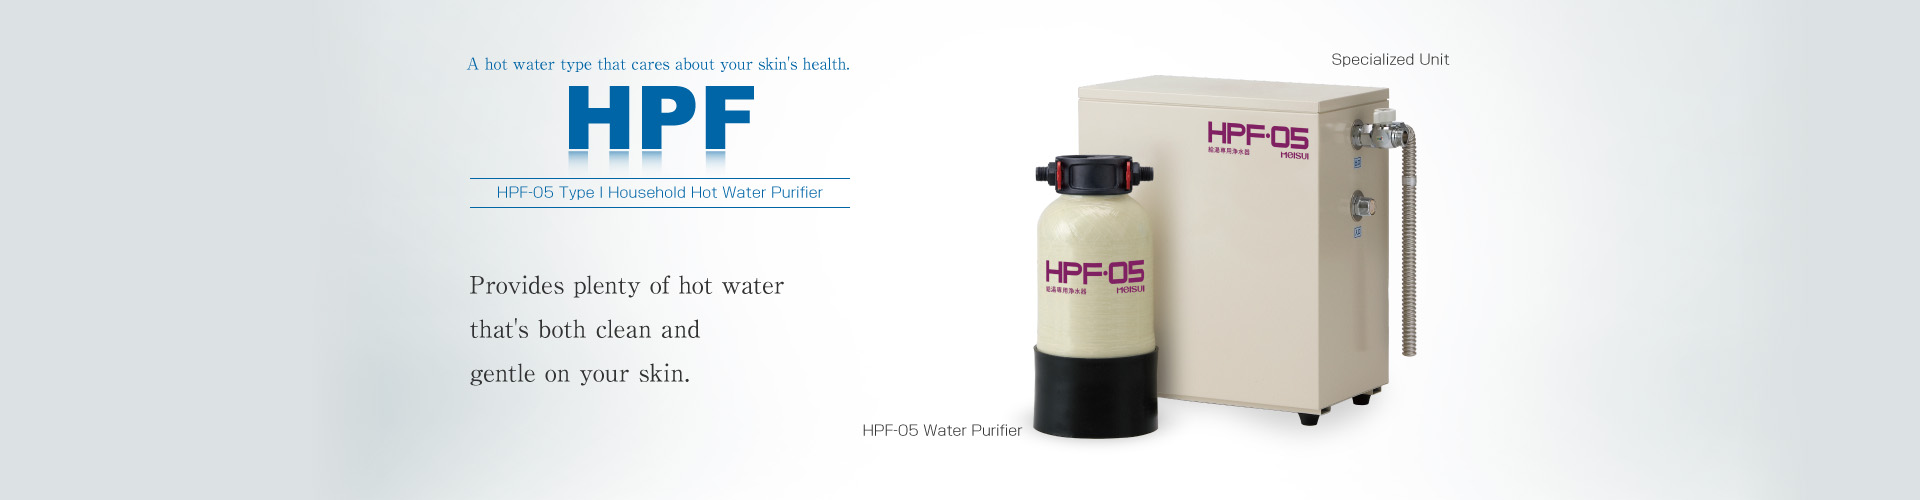 HPF-05 Type I Hot Water Purifier